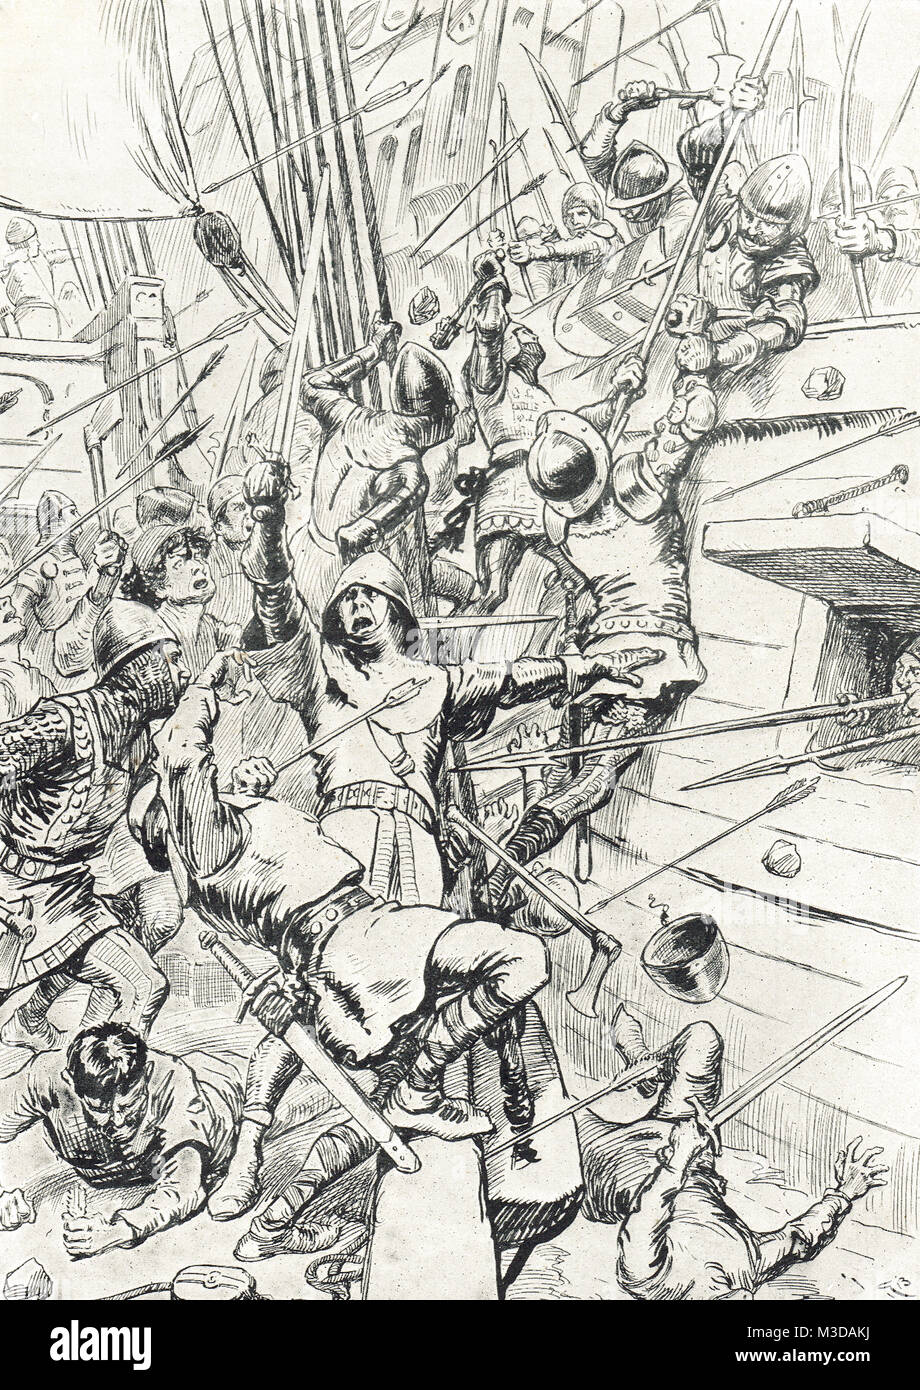 La battaglia di Sluys, 24 giugno 1340 AKA Battaglia di l'Ecluse, mare battaglia combattuta tra Inghilterra e Francia, uno dei conflitti di apertura dei cento anni di guerra Foto Stock